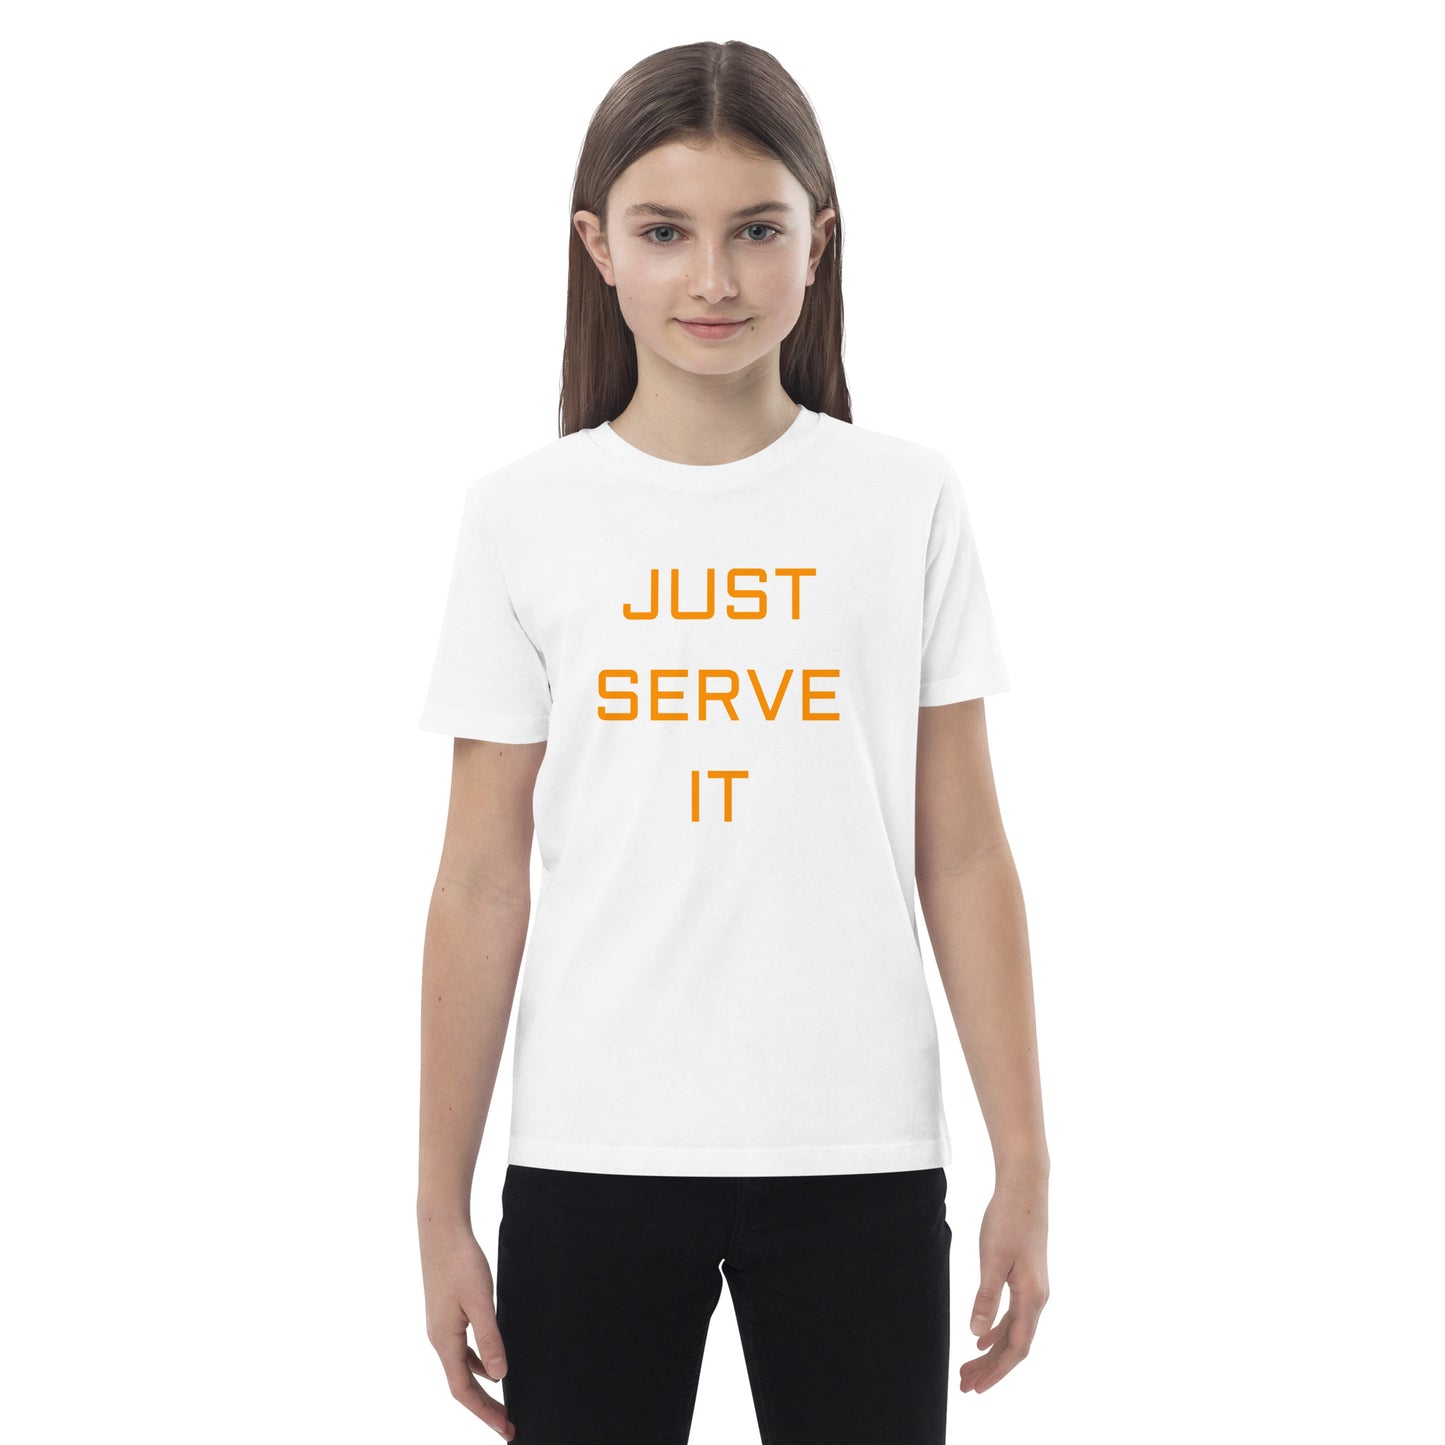 Just Serve It Kids Tee